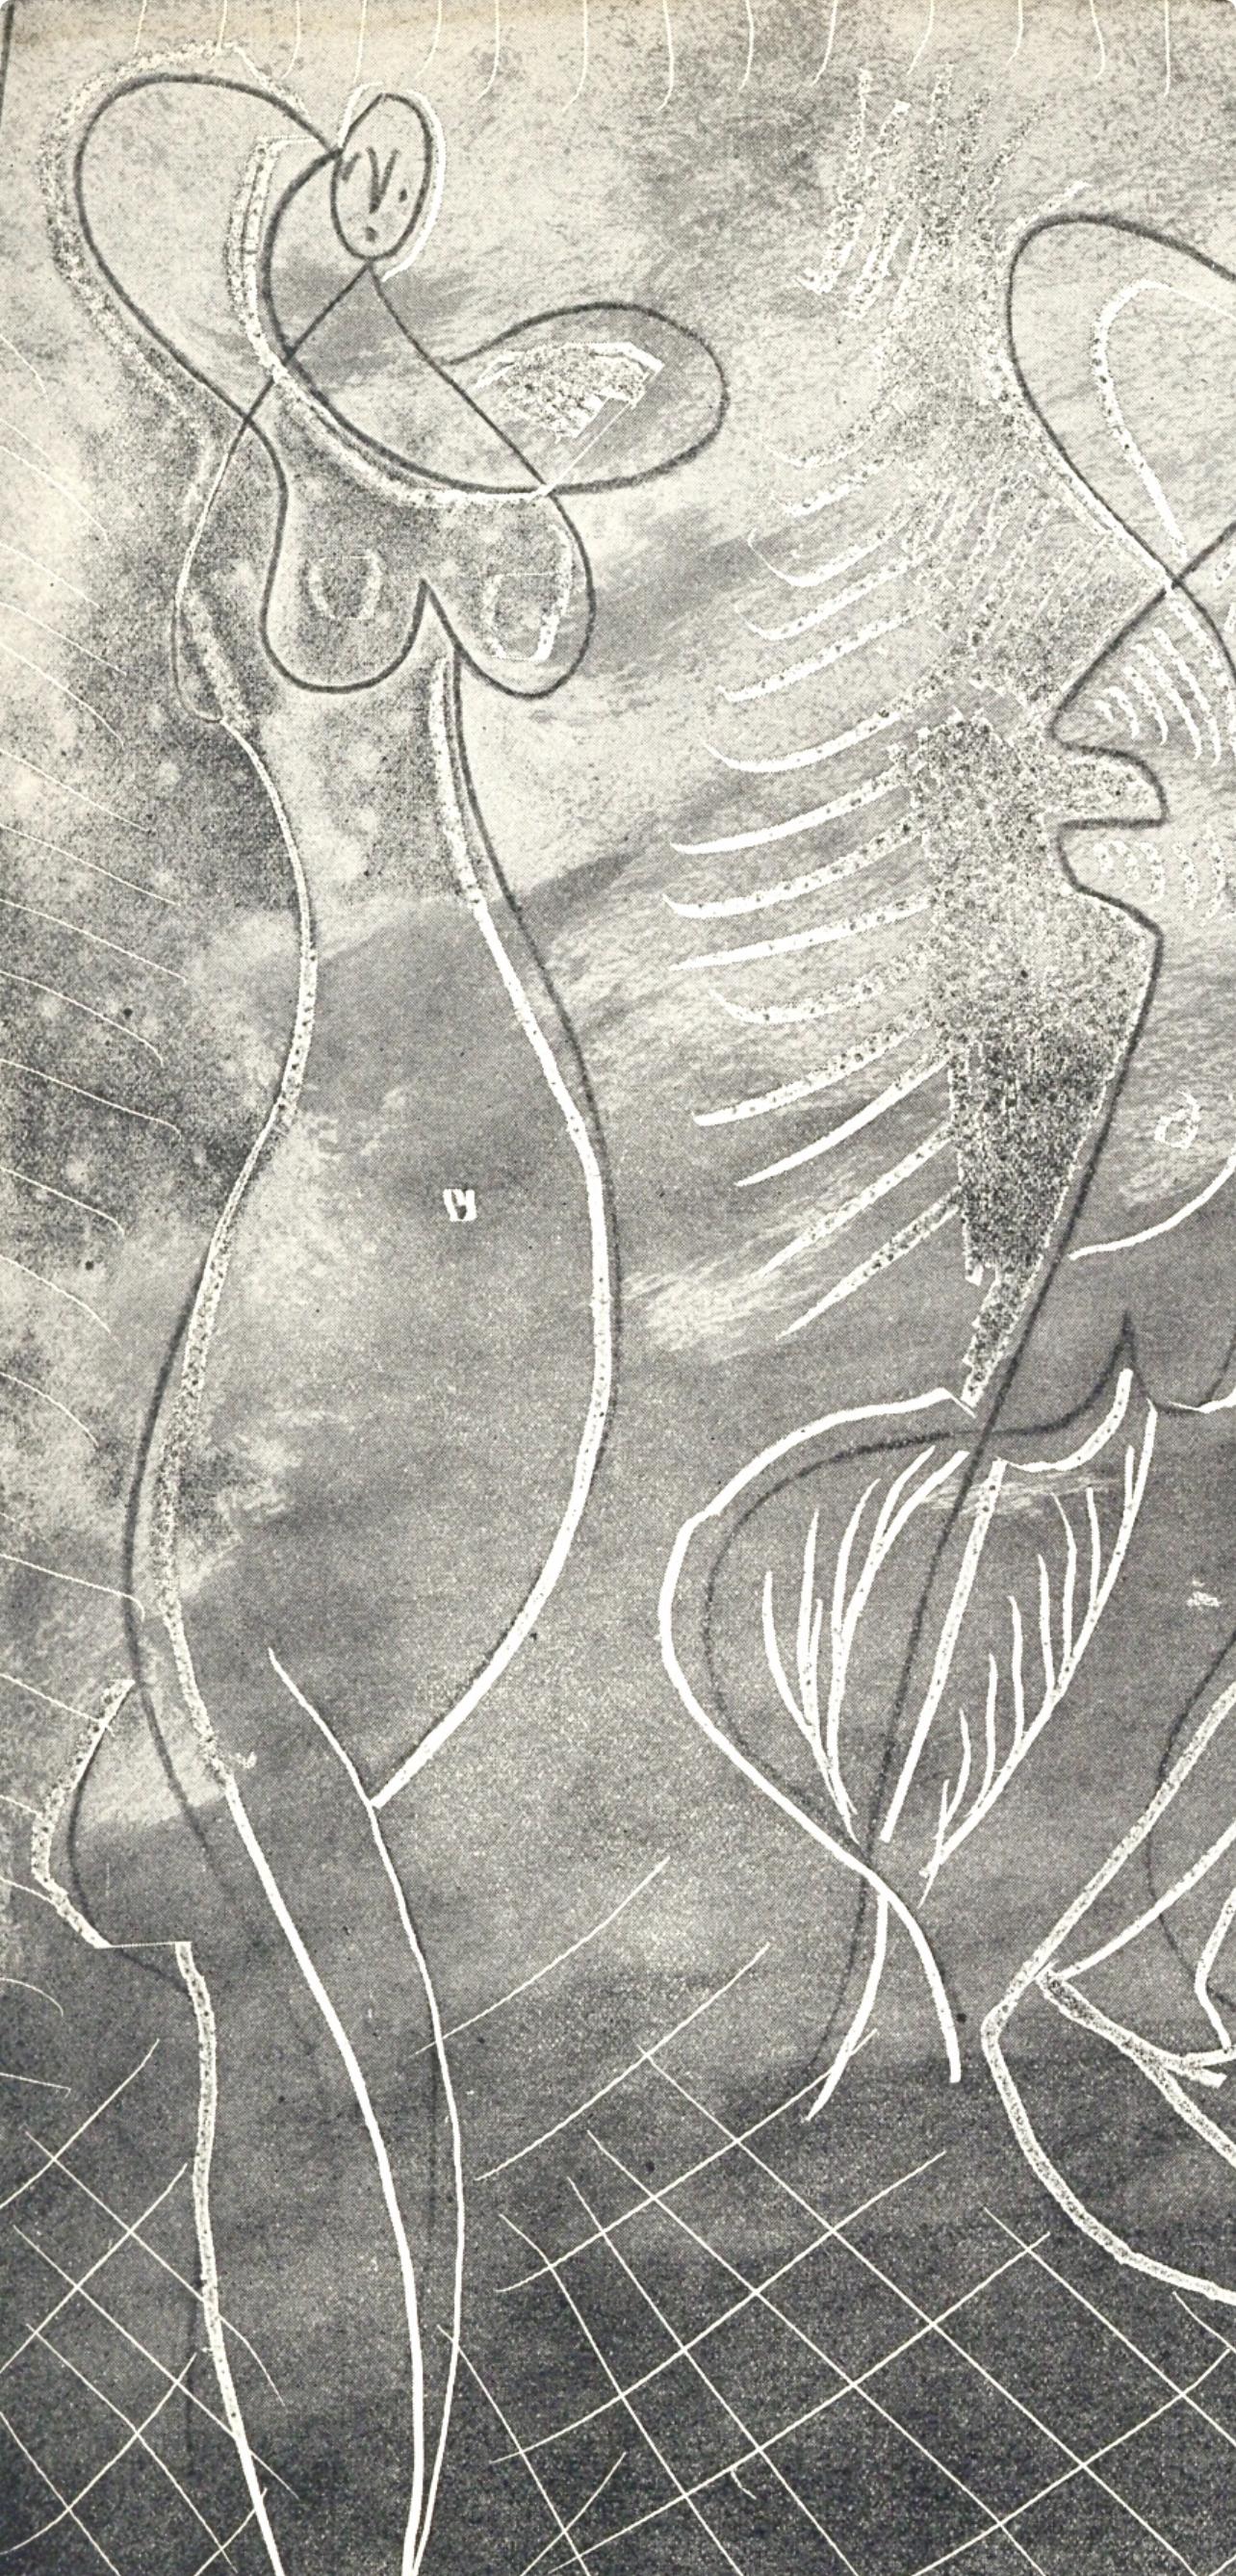 Picasso, Trois baigneuses, La Chèvre-Feuille (after) - Print by Pablo Picasso